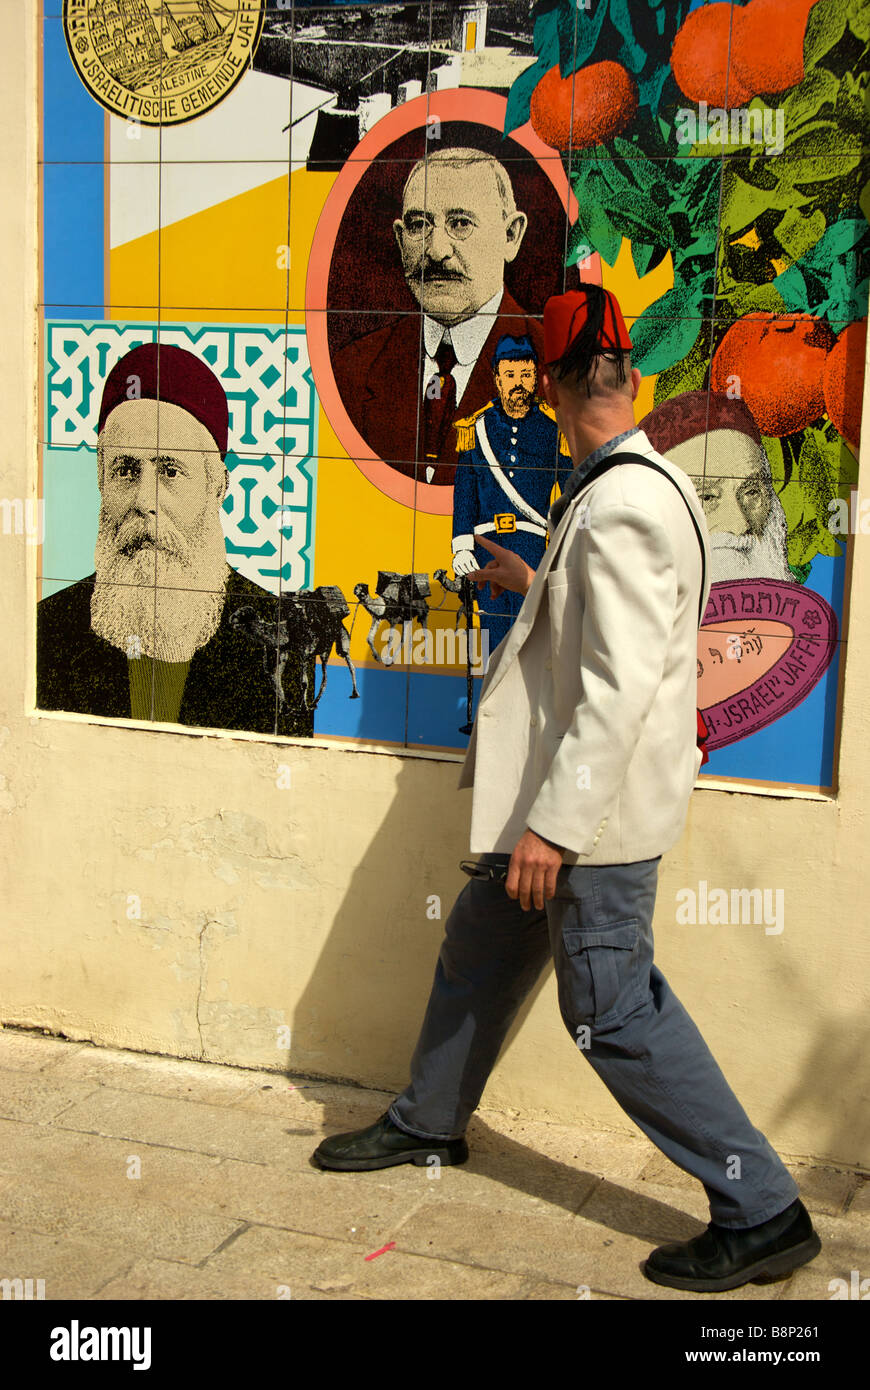 Animata guida umoristico dando parlare di ebrei provenienti dal Nord Africa illustrato nella carta murale che si insediarono nella regione di Jaffa Foto Stock